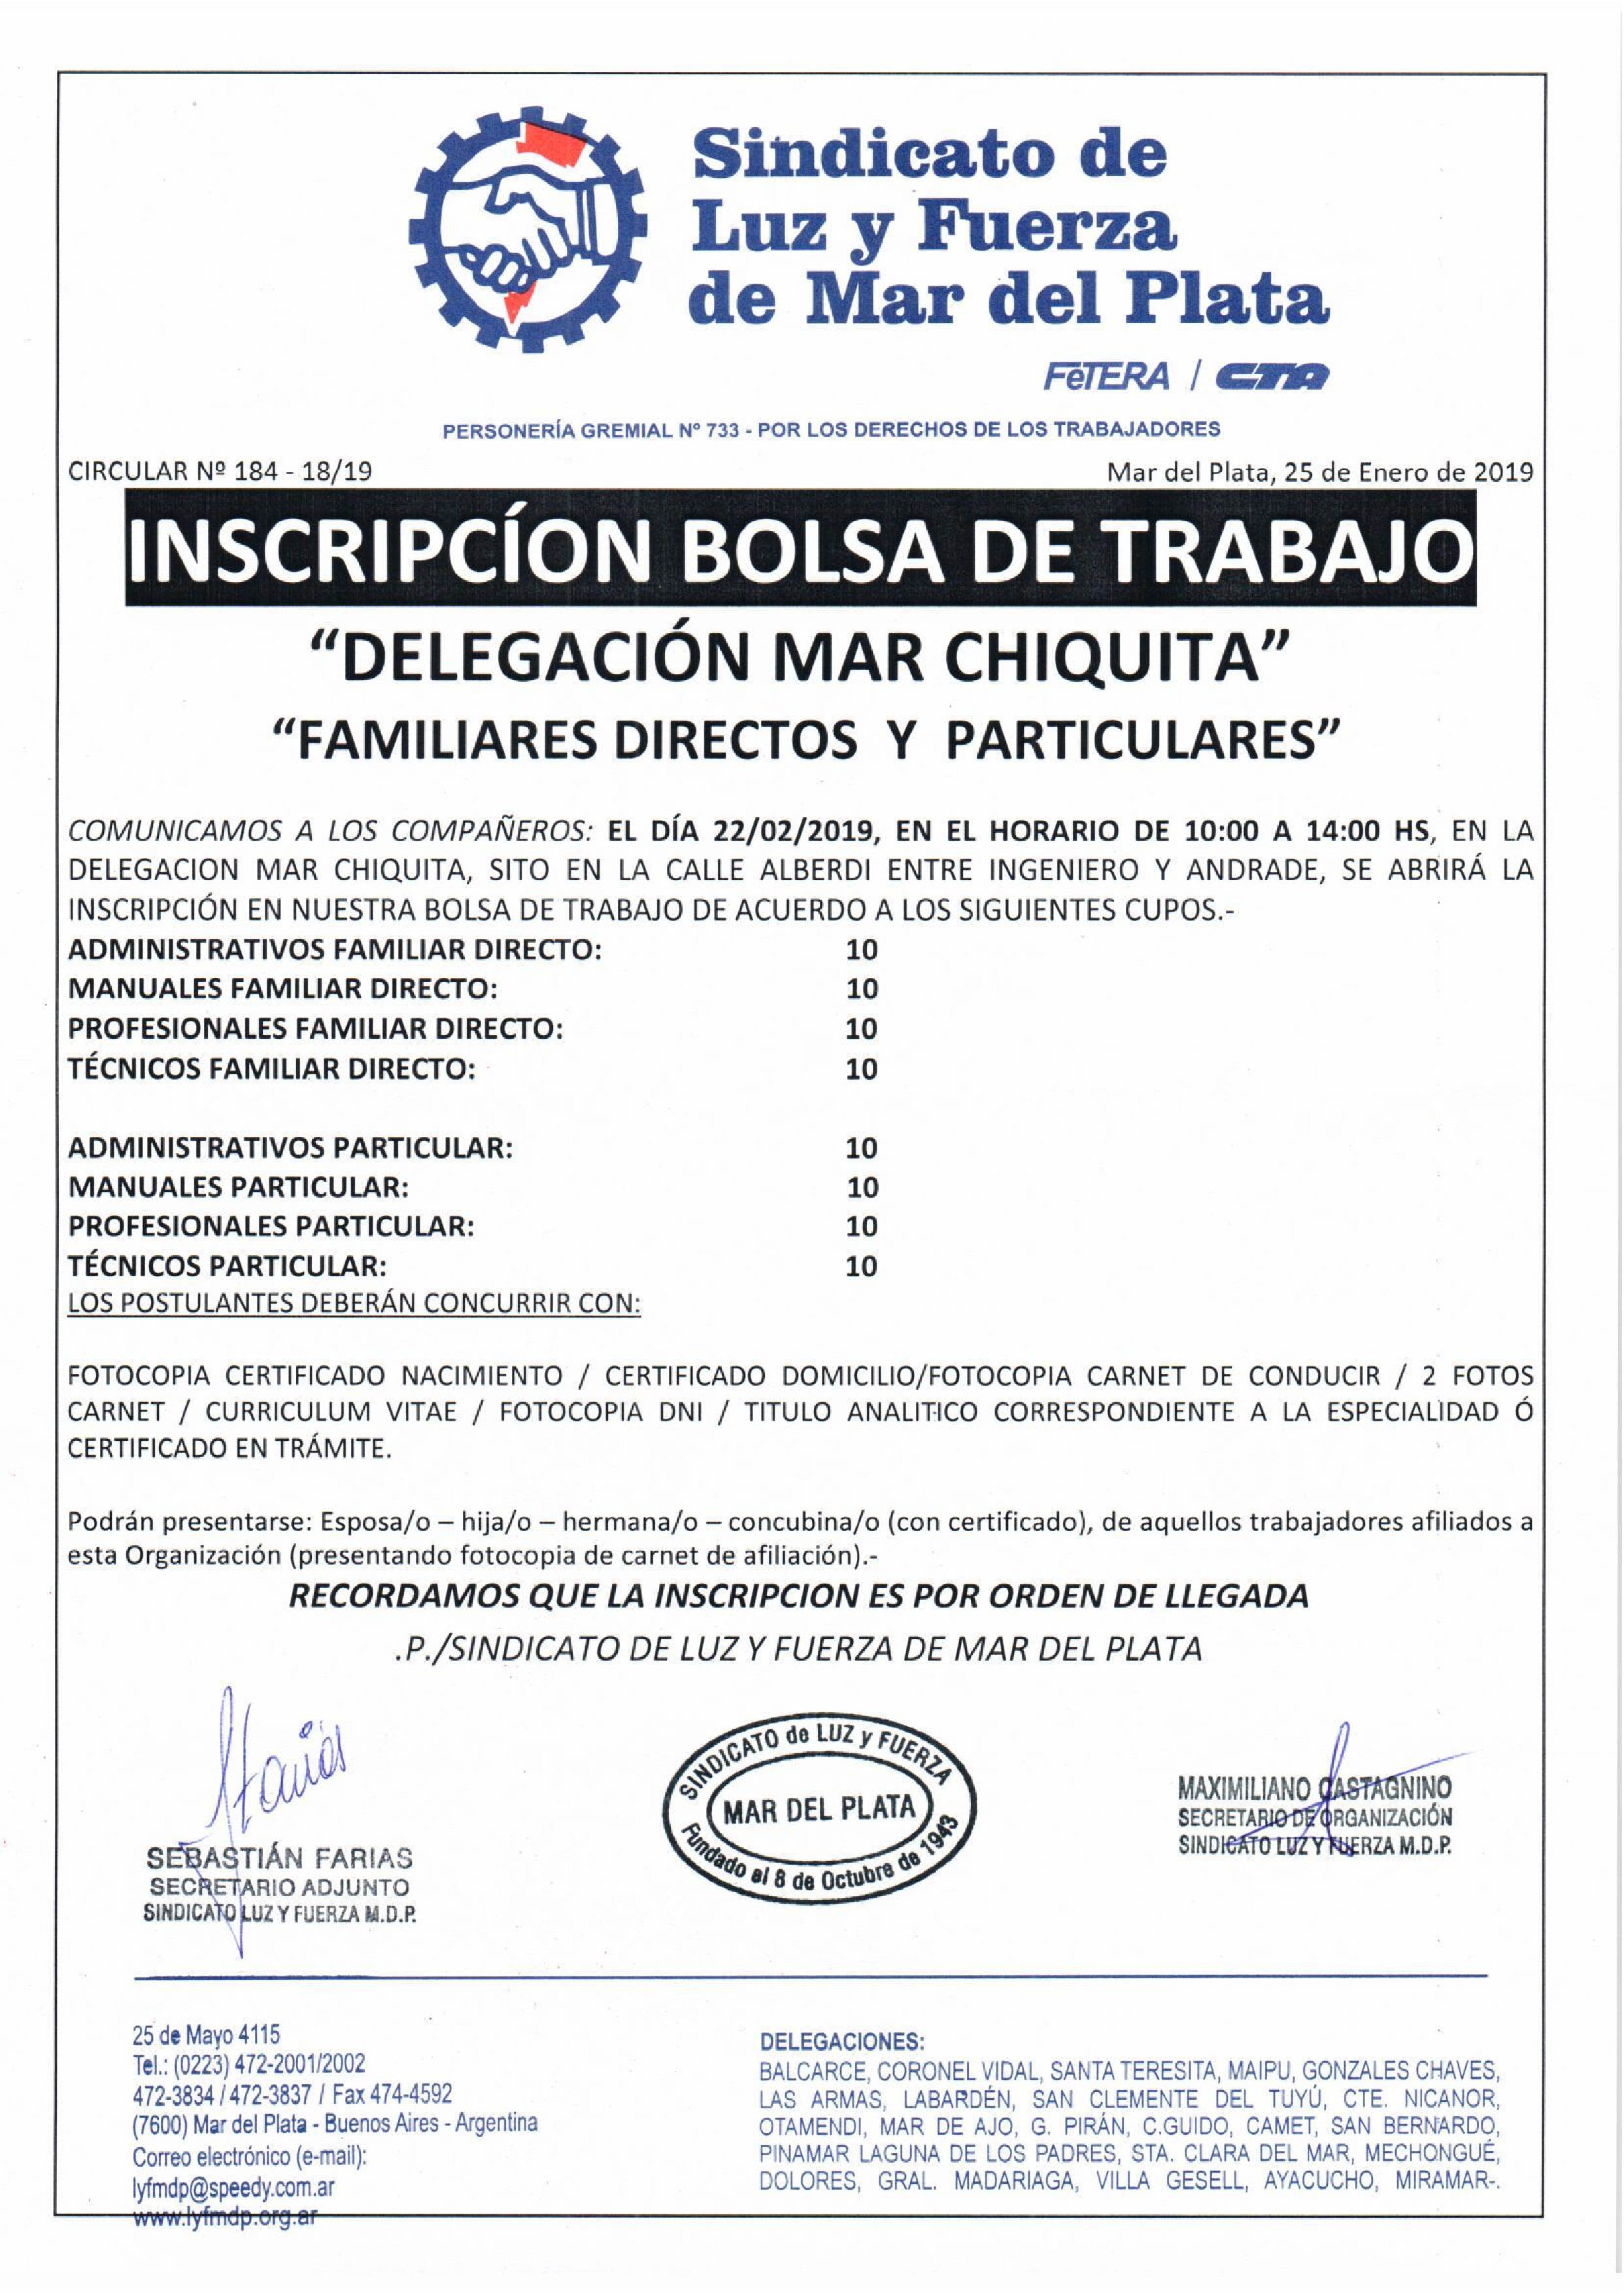 APERTURA INSCRIPCIONES BOLSA DE TRABAJO EN MAR CHIQUITA